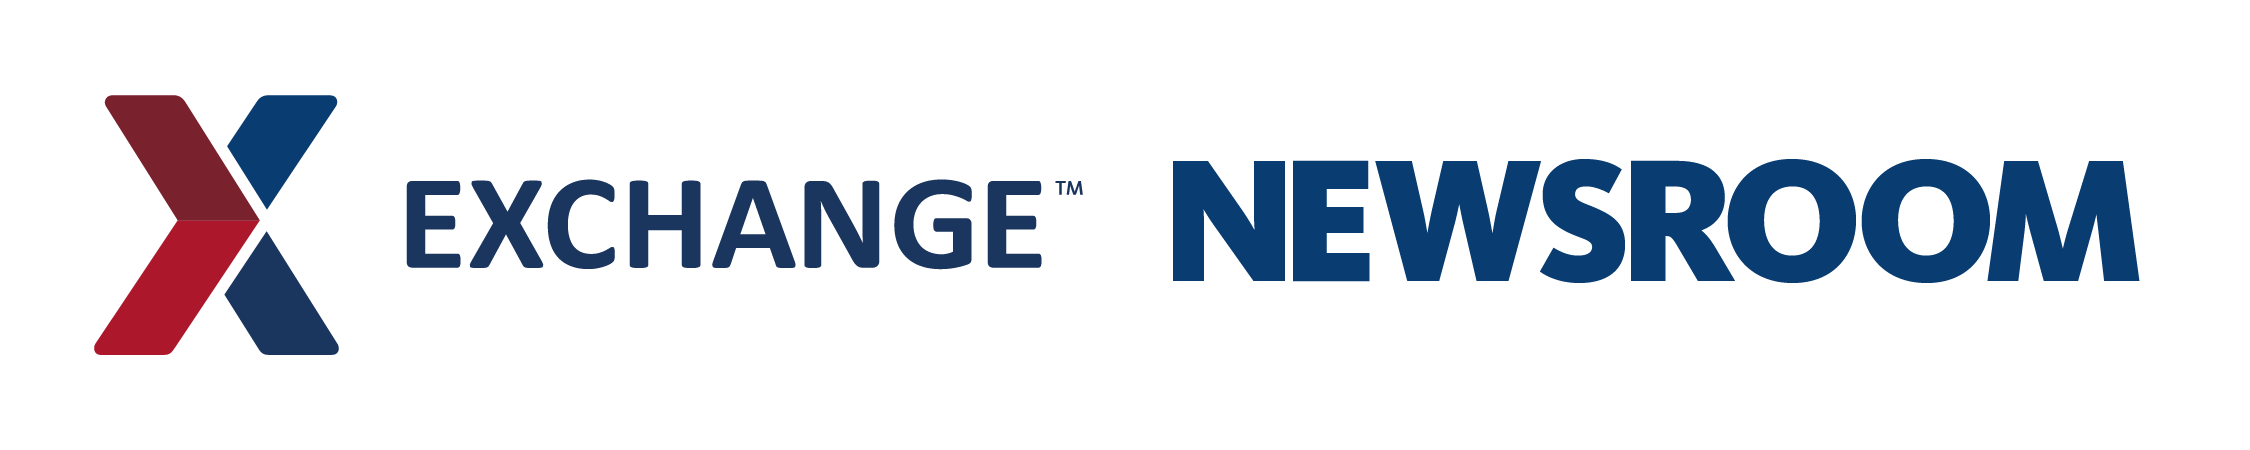 AAFES Logo - The Exchange Newsroom